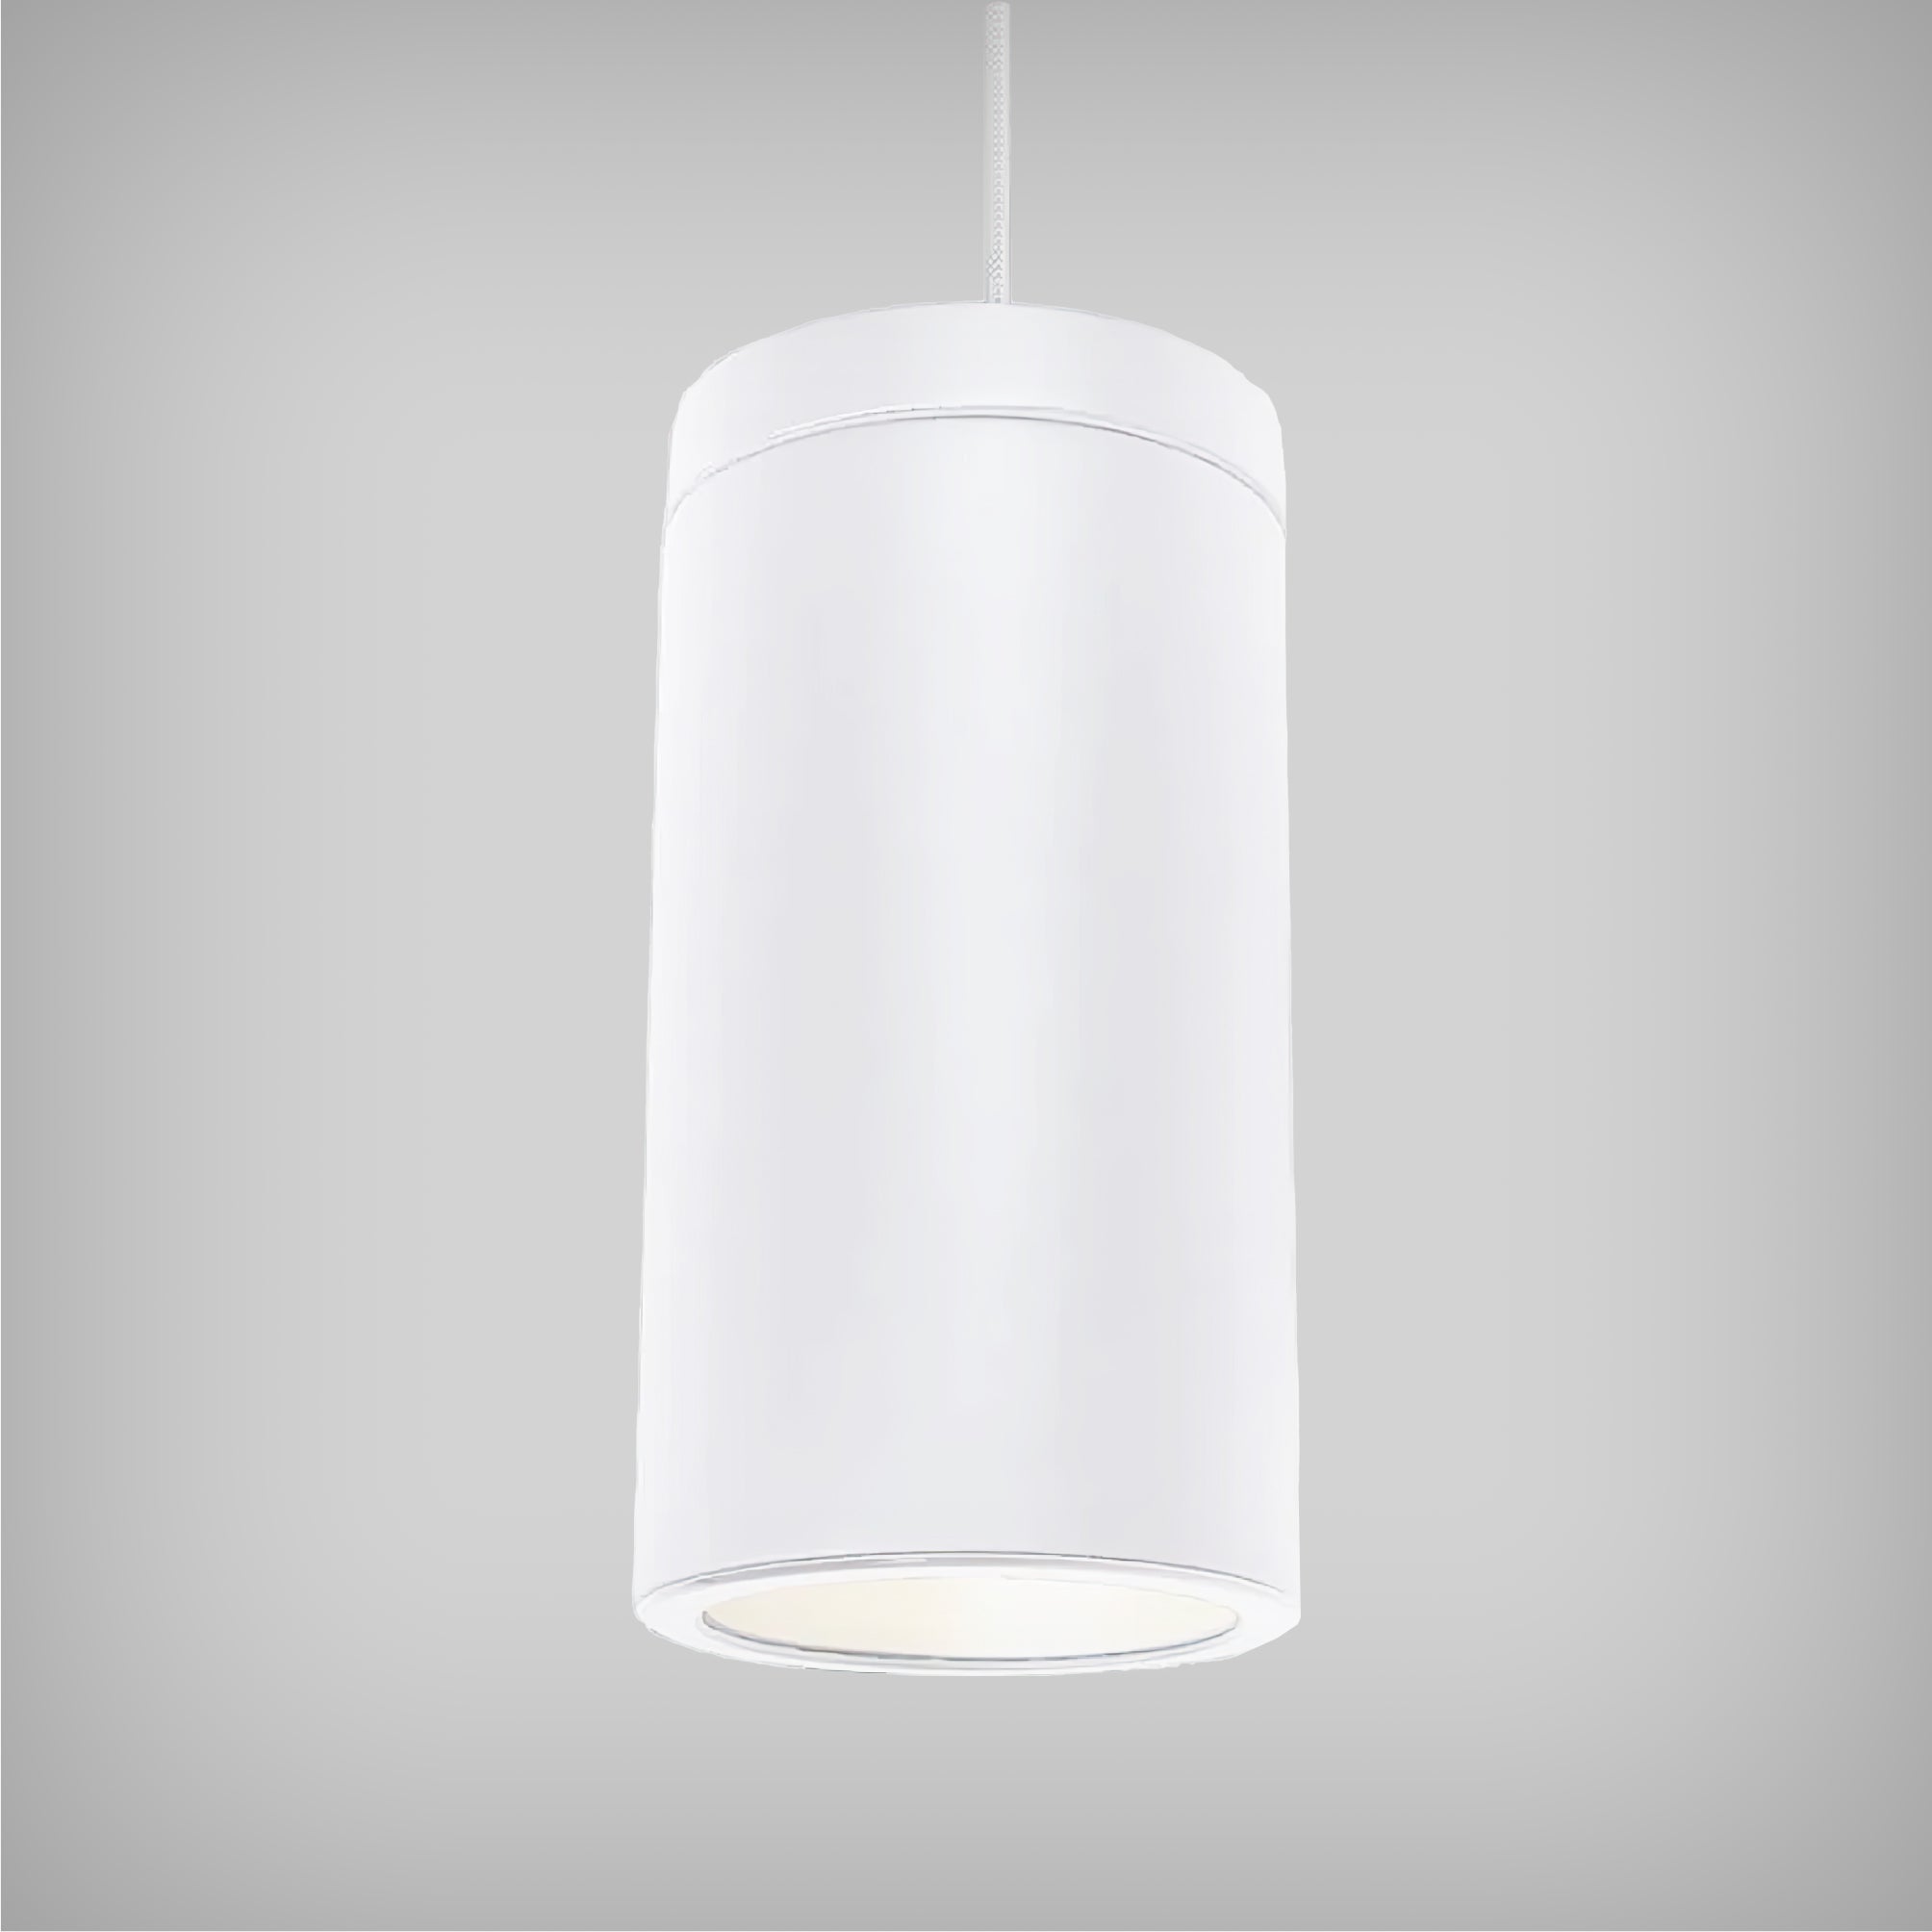 Stunt Architectural LED 6 Inch Ceramic Cylinder Pendant Light - LED Lights Direct